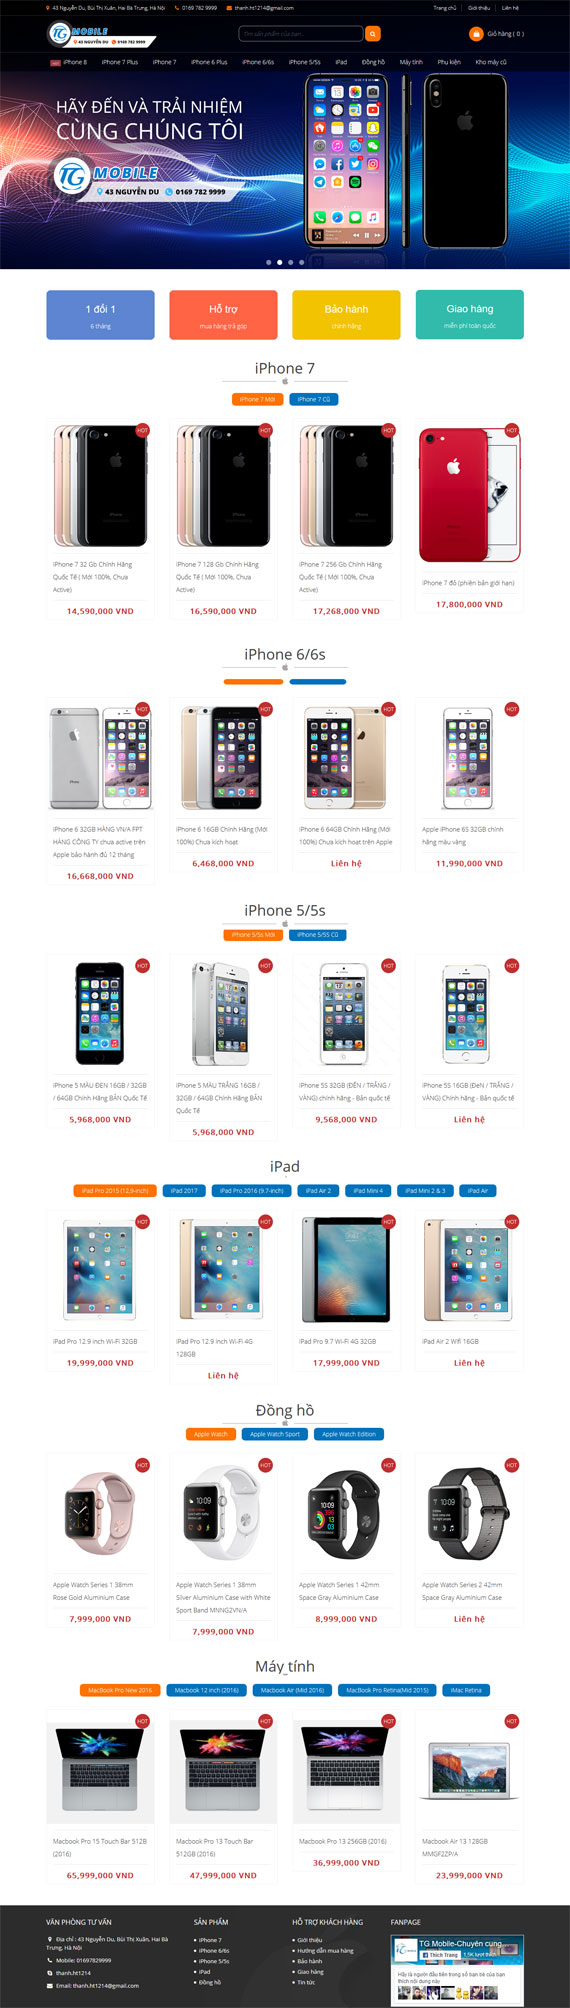 Giao diện website cửa hàng mua bán sản phẩm apple TG Mobile thiết kế tại ADC